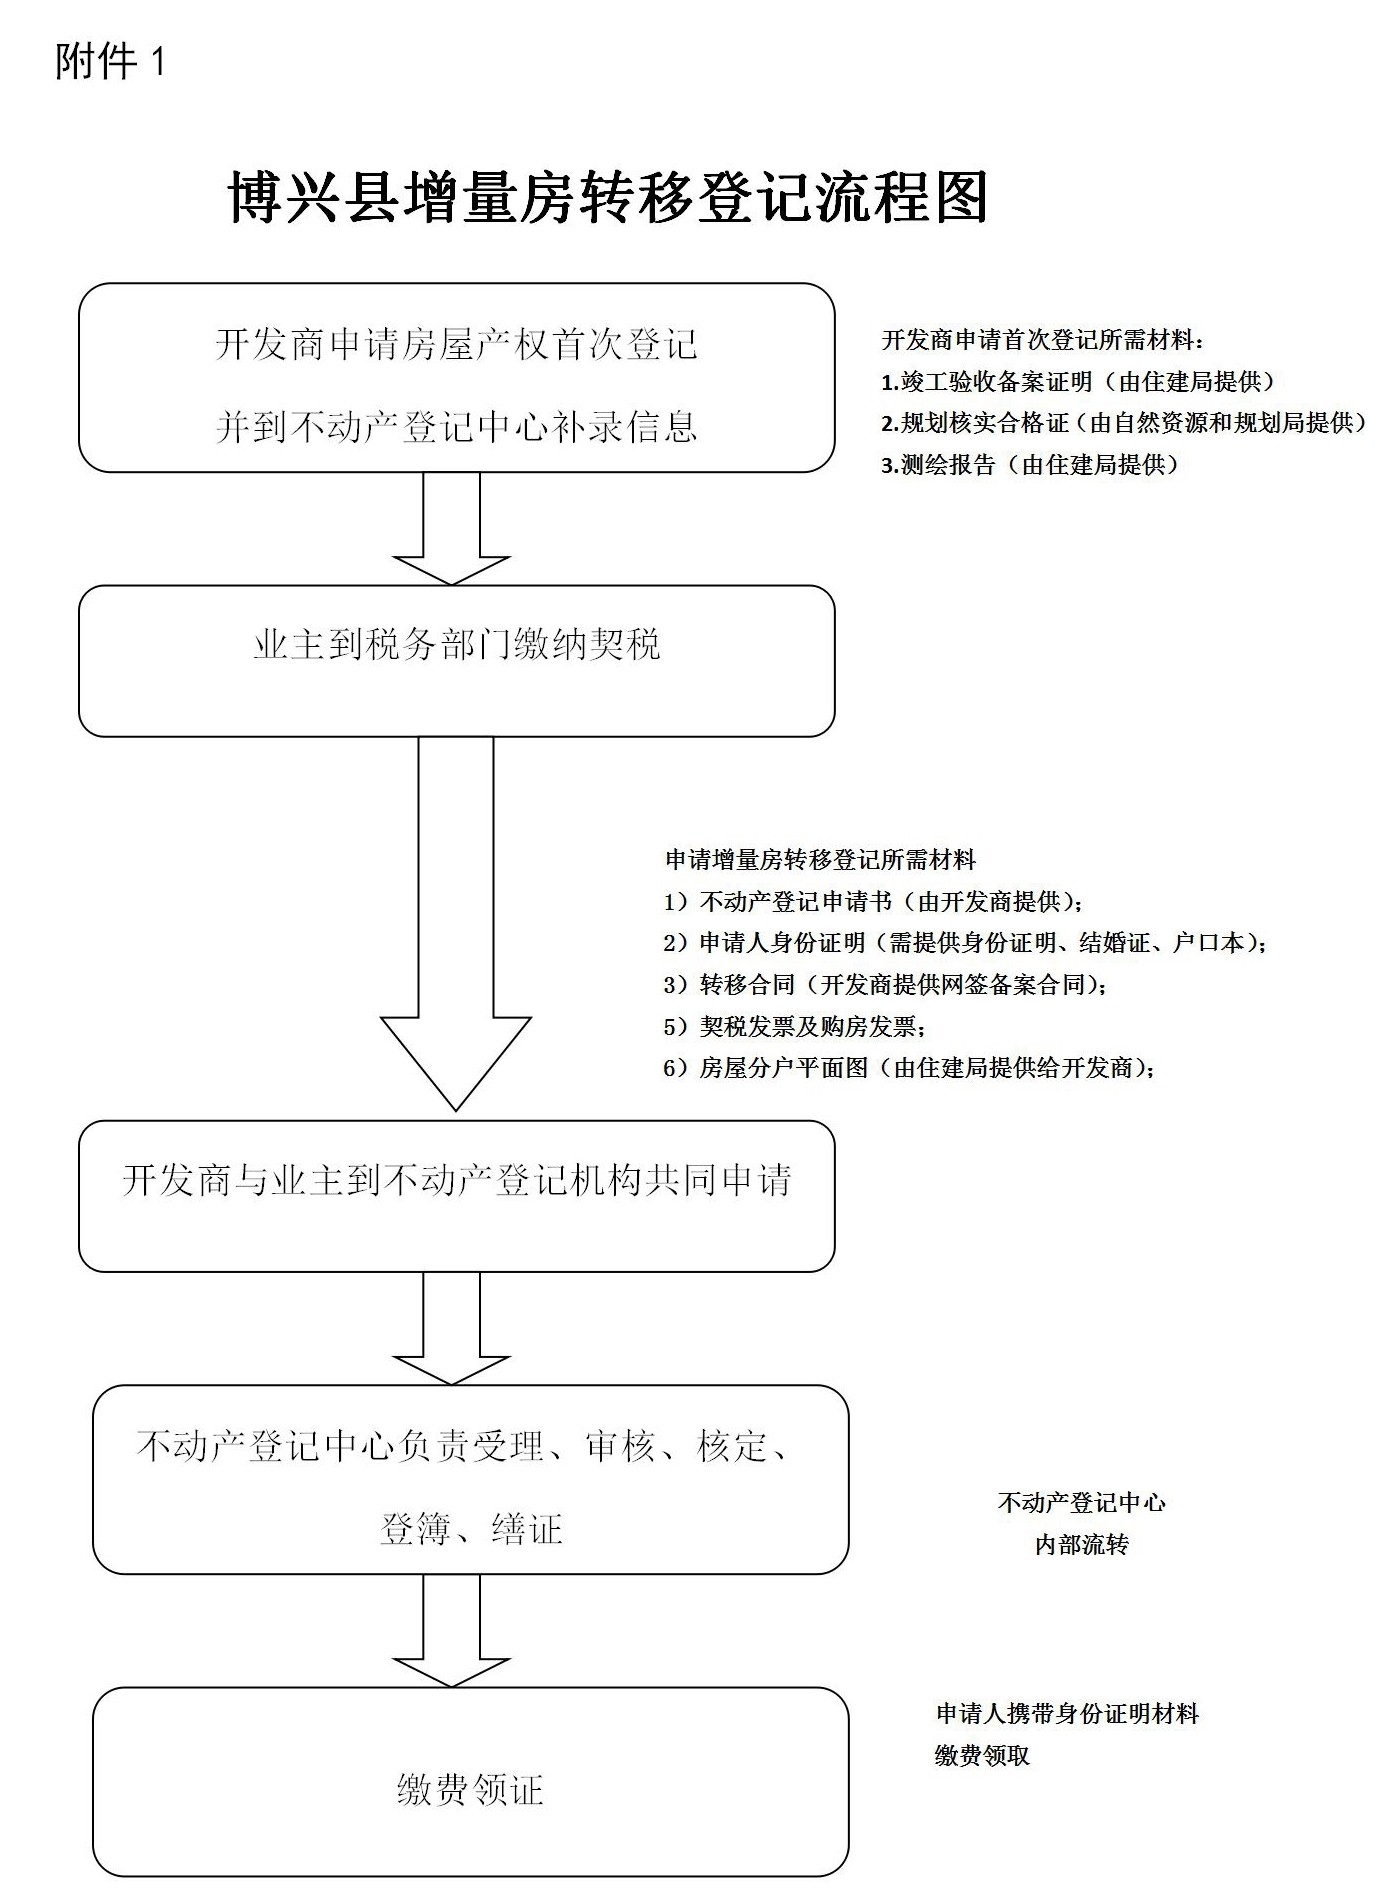 附件1：增量房转移登记流程图_01_看图王